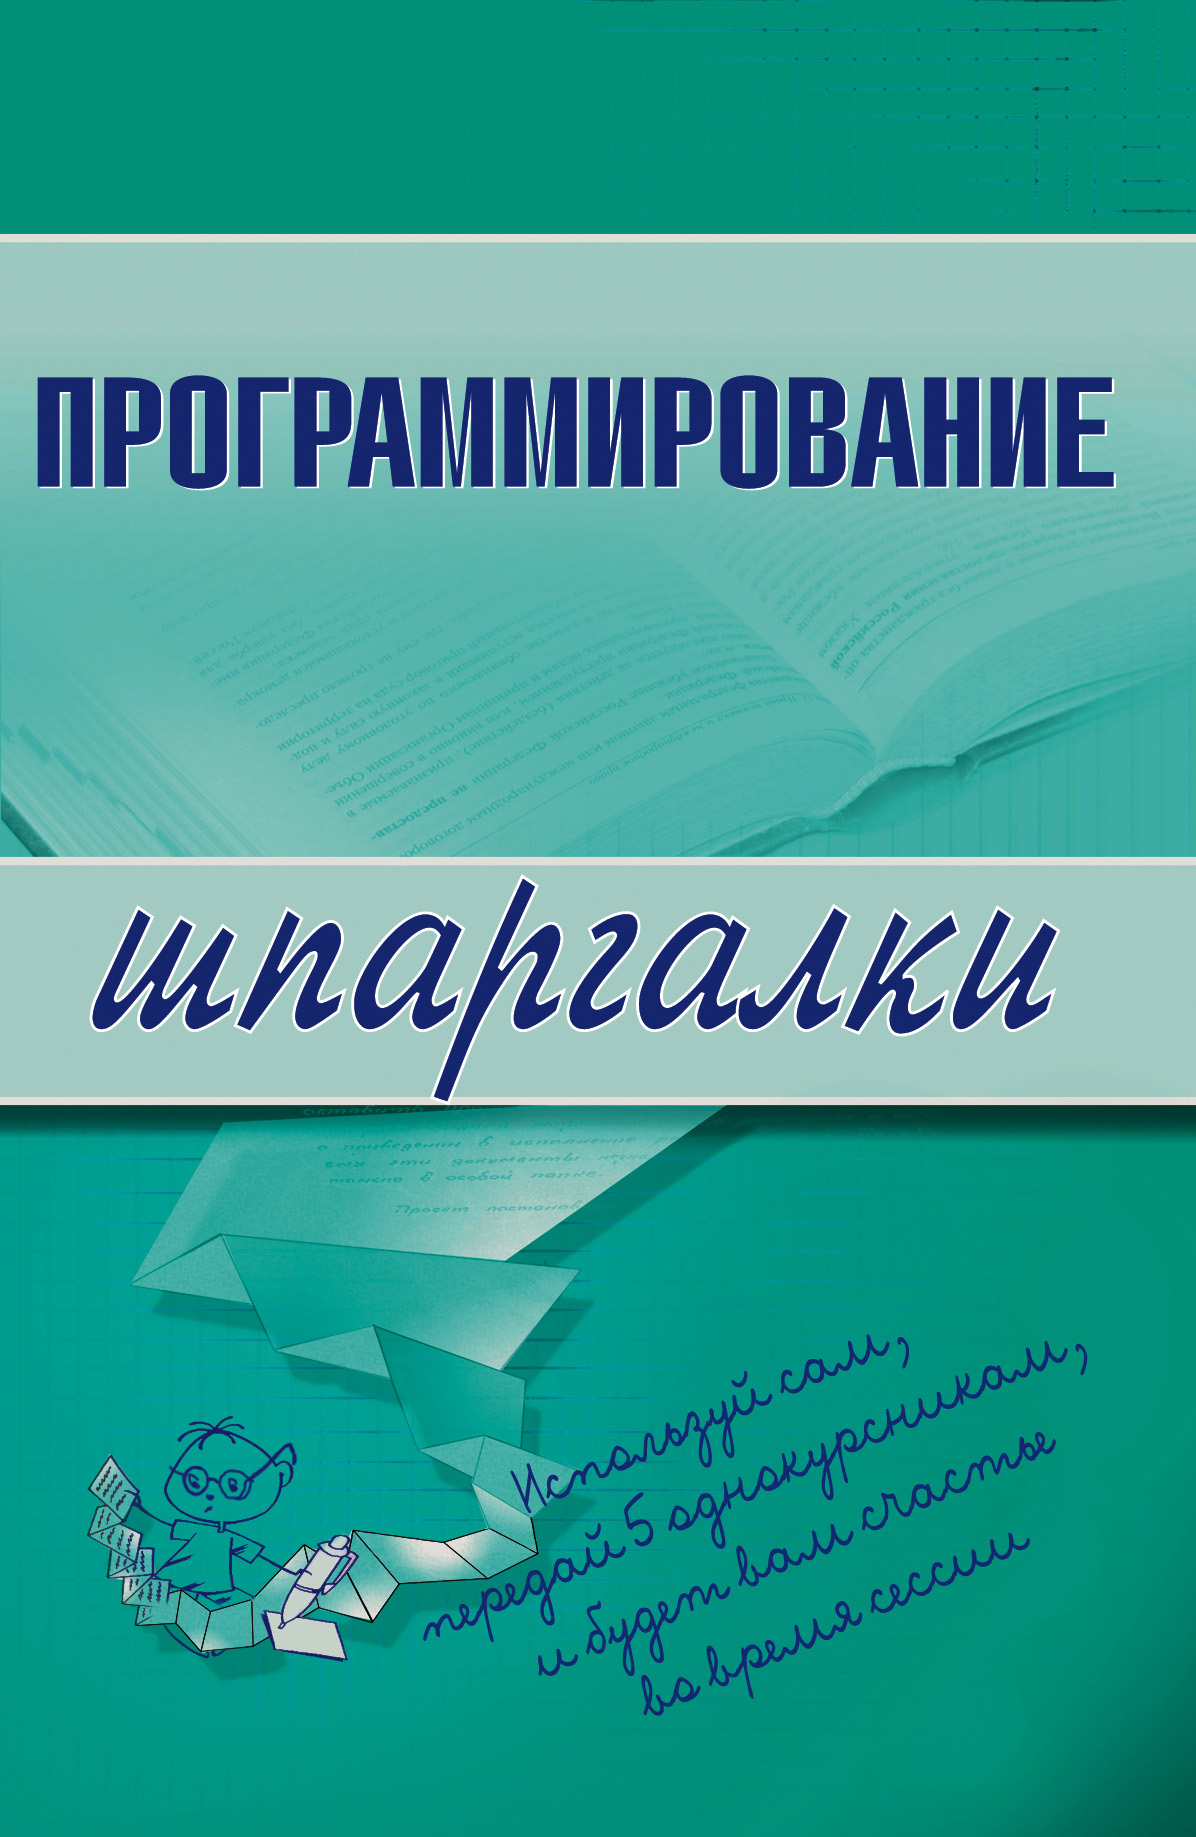 Книга Шпаргалки Программирование созданная Ирина Сергеевна Козлова может относится к жанру программирование. Стоимость электронной книги Программирование с идентификатором 180297 составляет 44.95 руб.